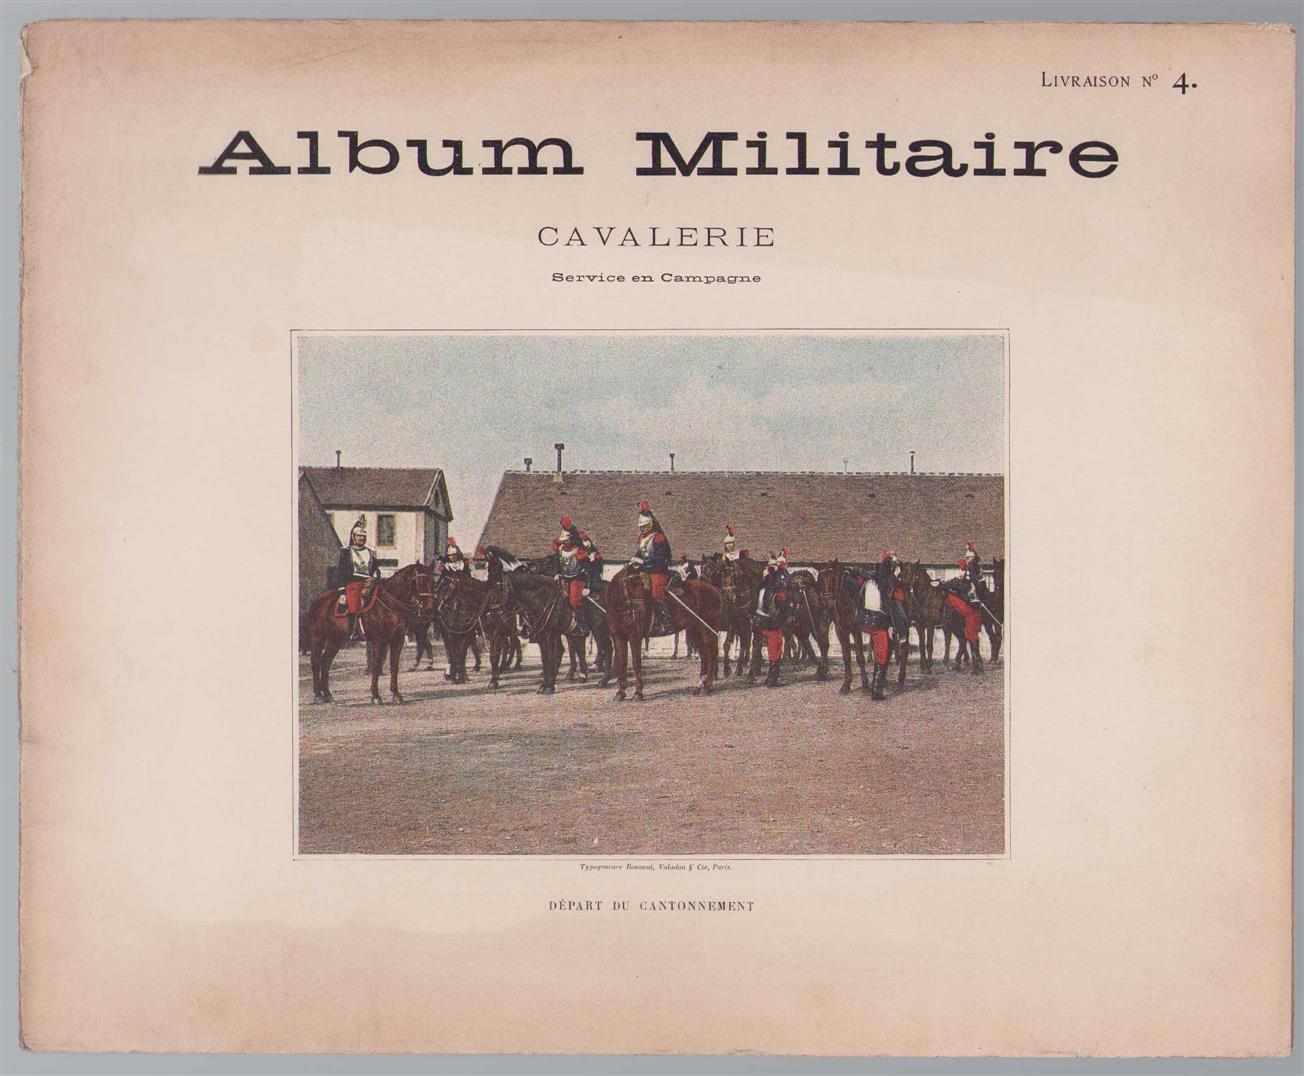 n.n - Album militaire de l'Armee francaise. Cavalerie Service en Campagne